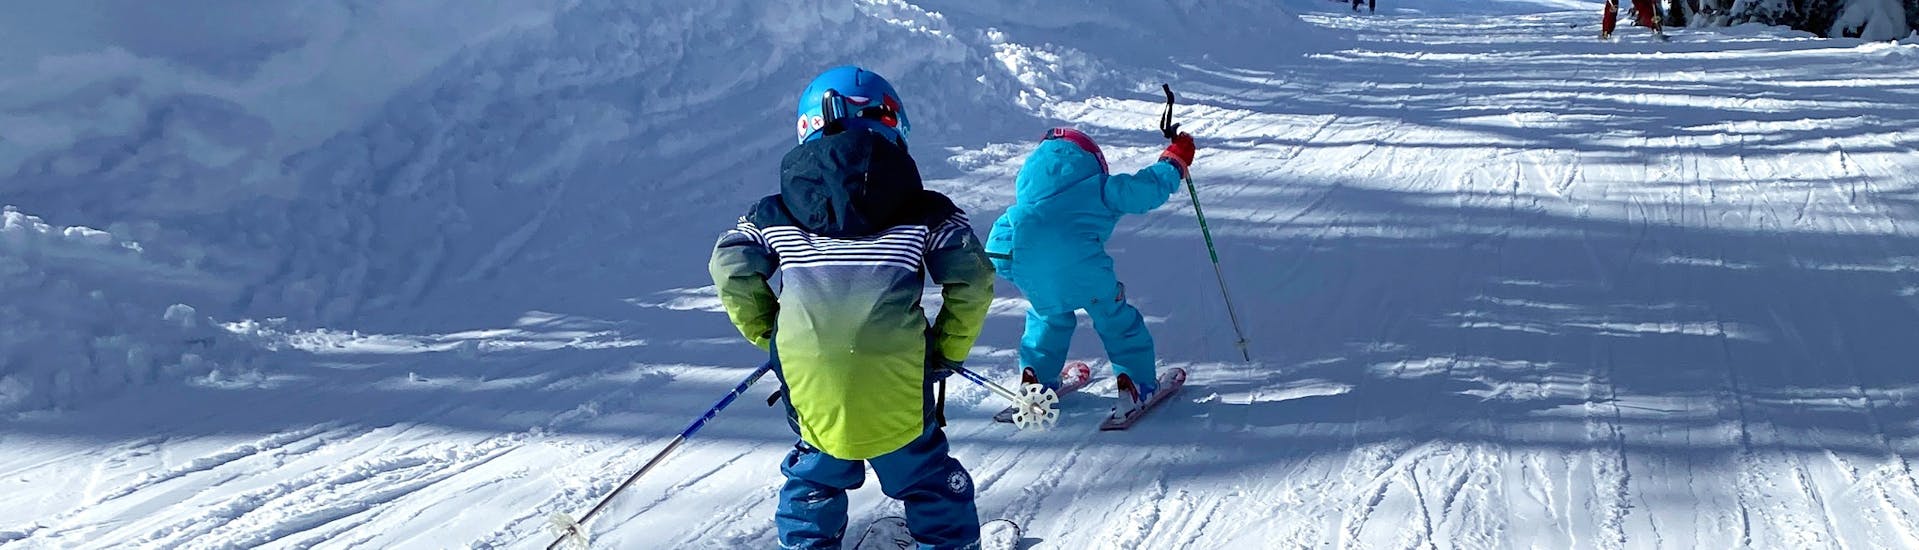 Privé skilessen voor kinderen vanaf 3 jaar - beginners.